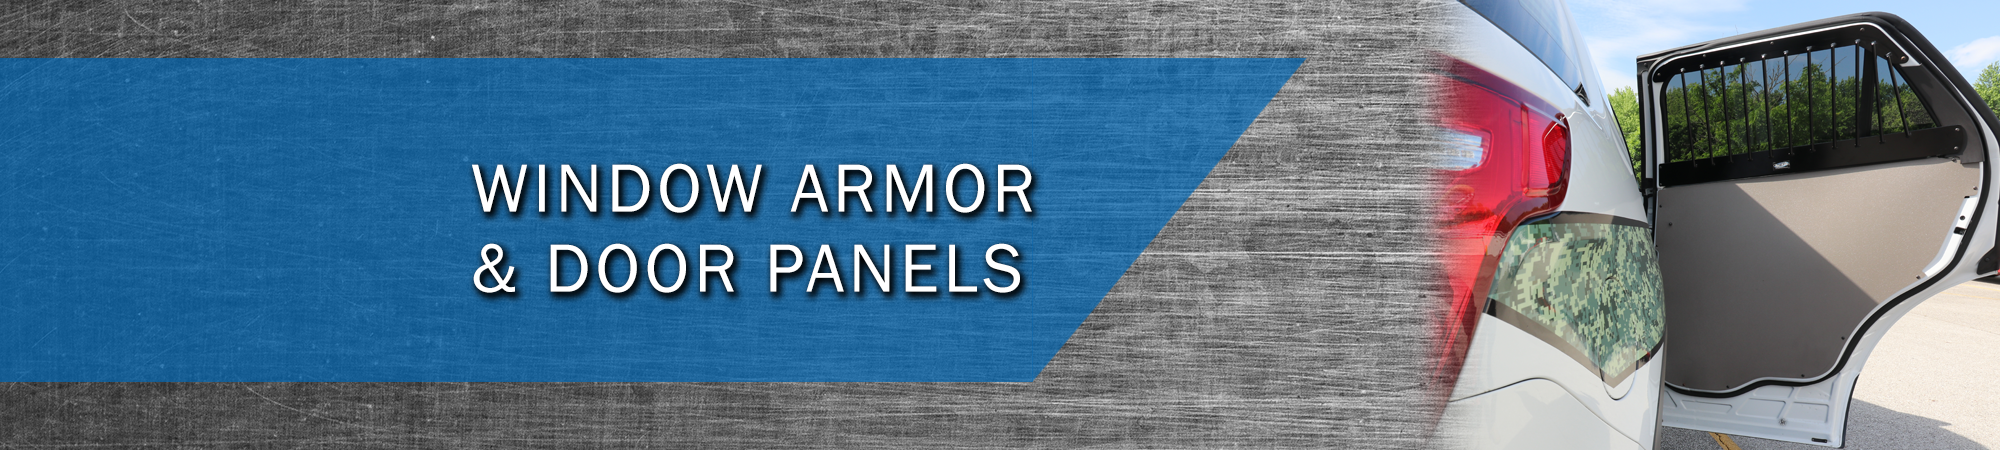 Window Armor & Door Panels